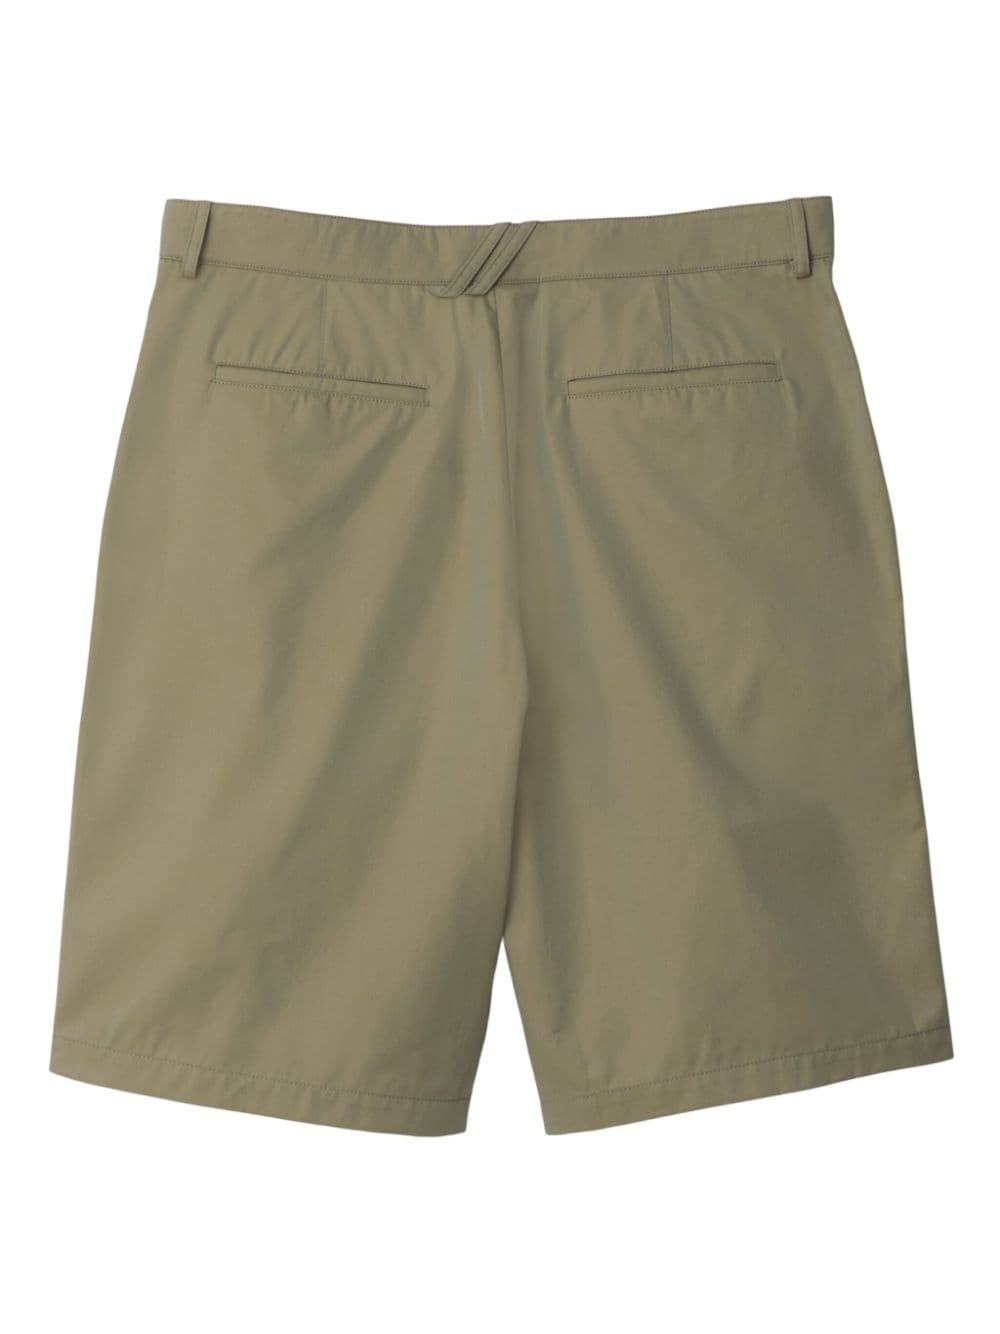 cotton chino shorts - 2